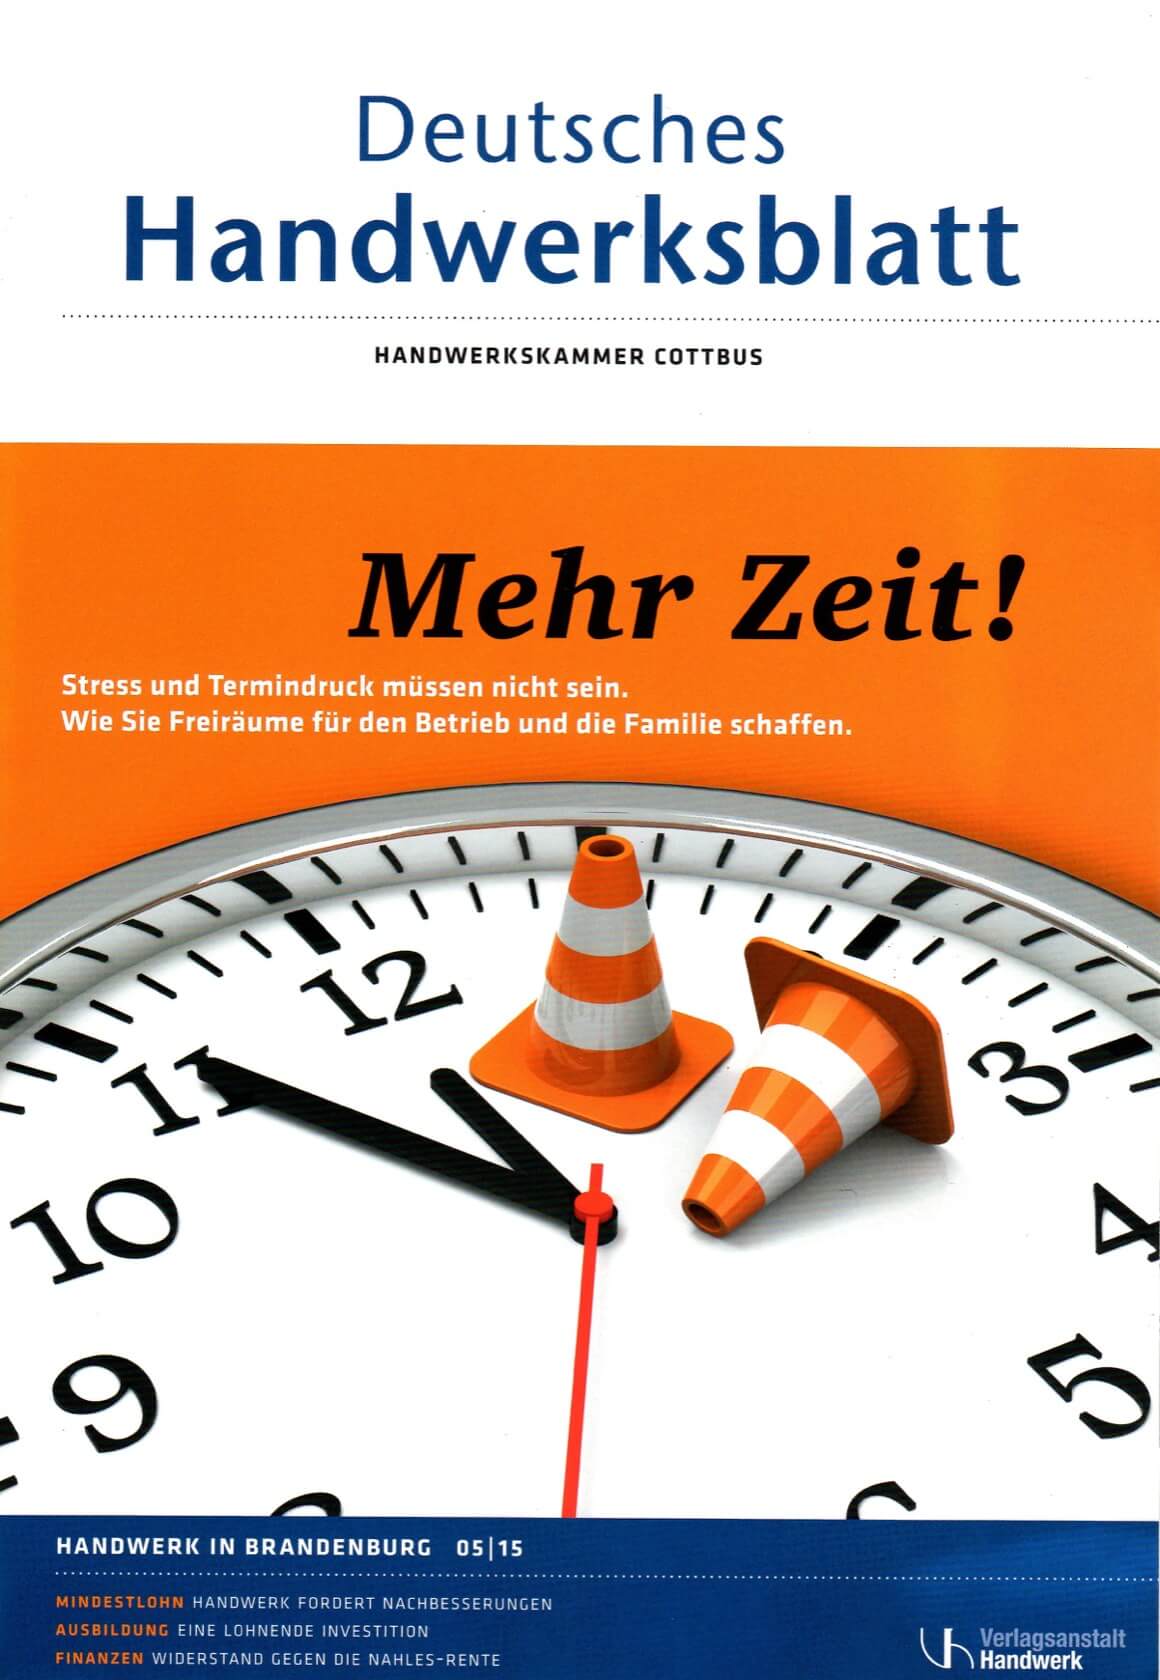 Deutsches Handwerksblatt